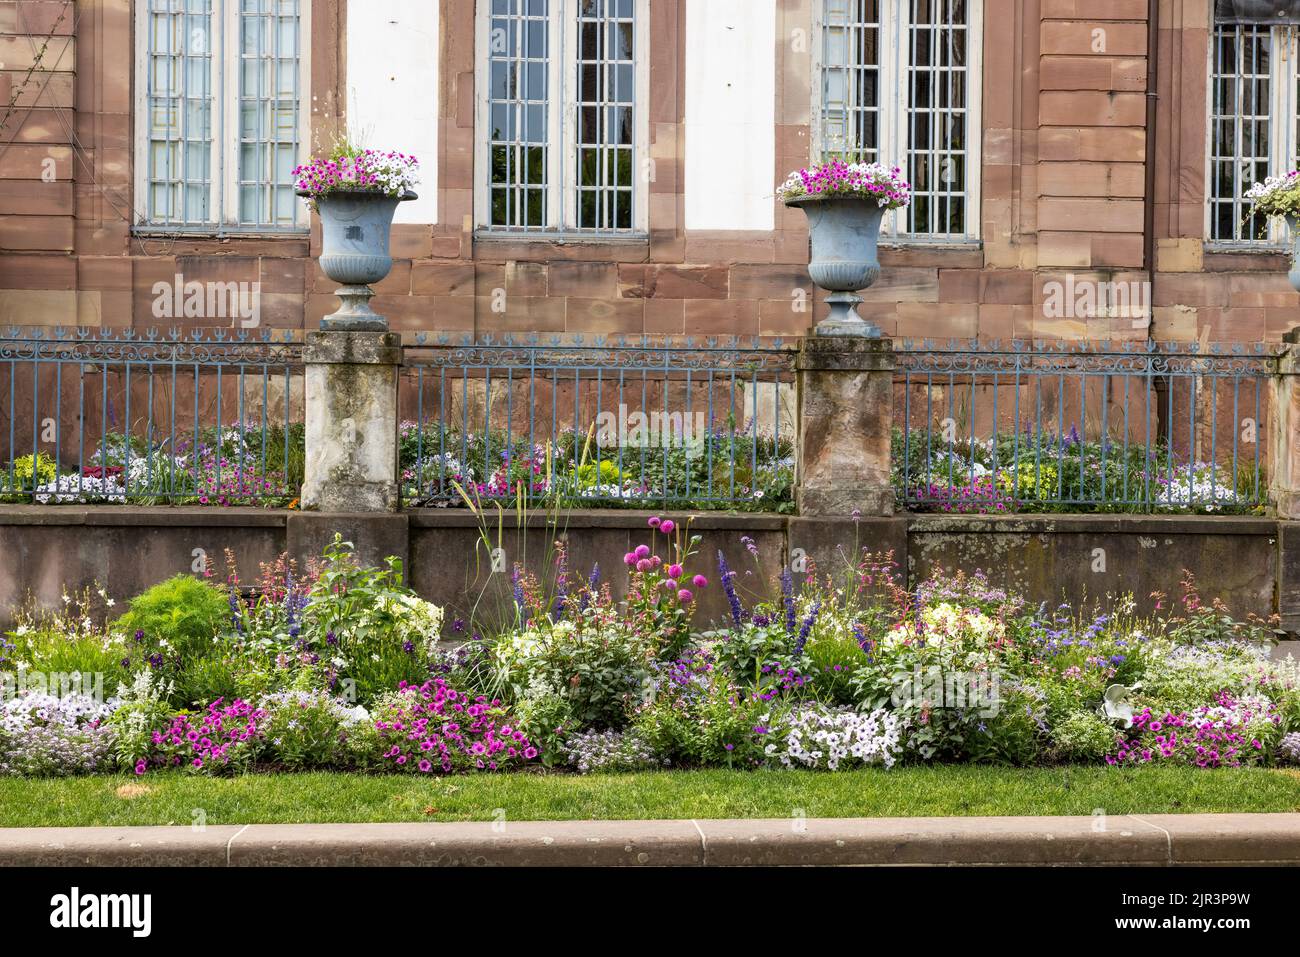 Blumen vor einem Gebäude, Place Broglie, Straßburg, Frankreich Stockfoto